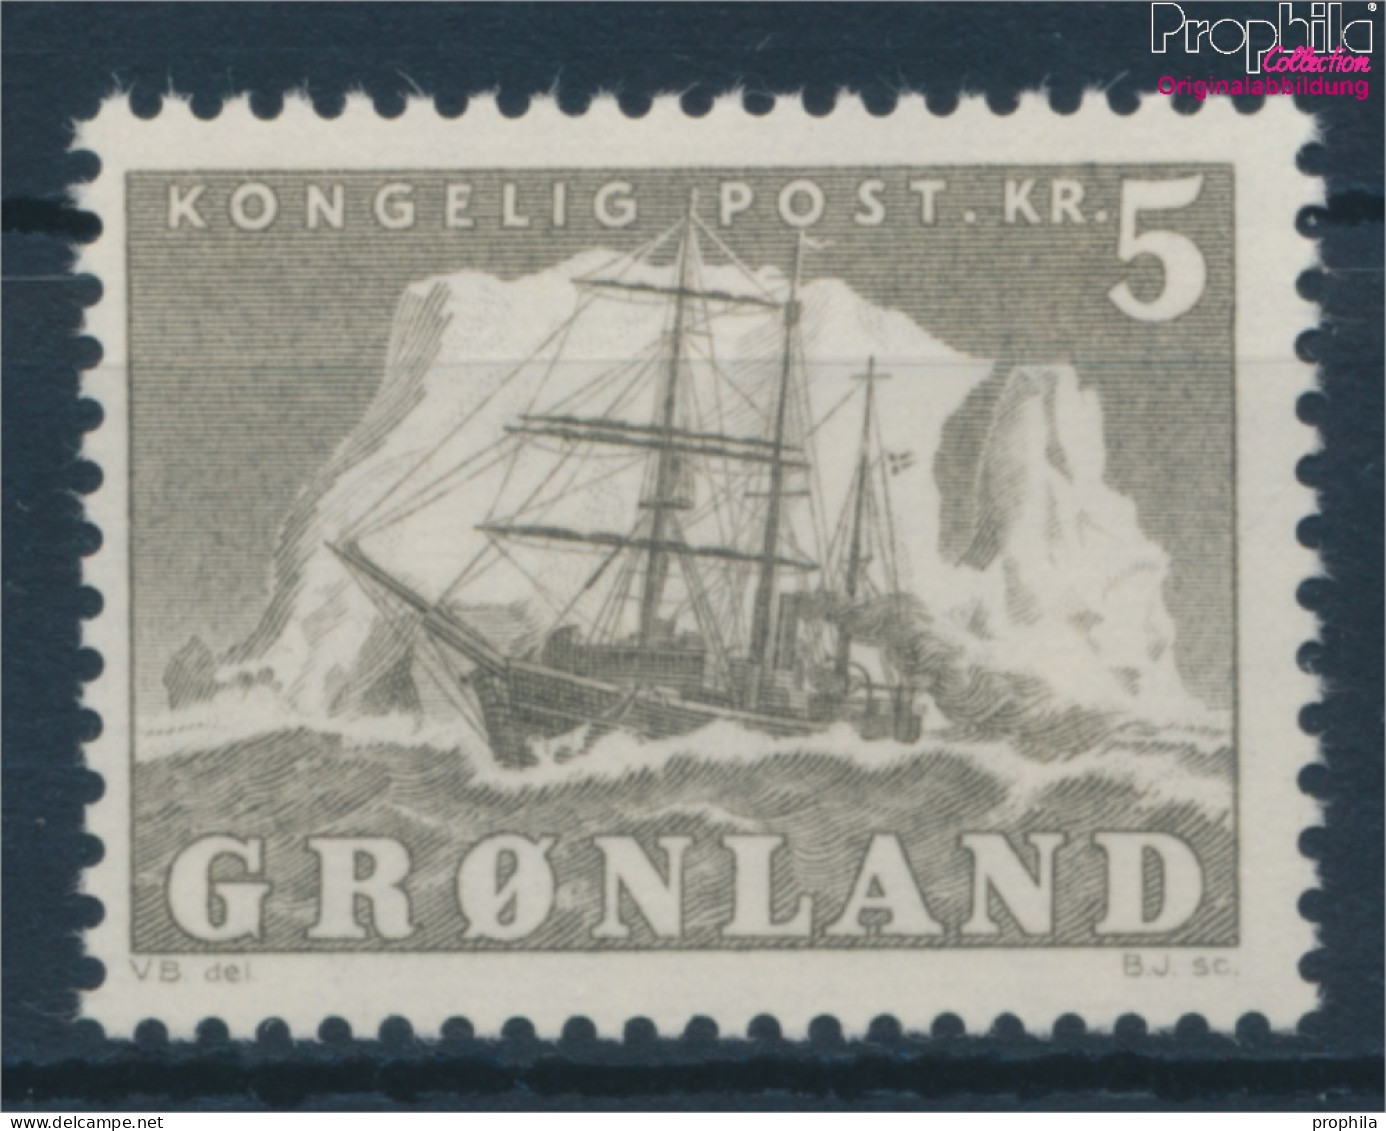 Dänemark - Grönland 41 (kompl.Ausg.) Postfrisch 1958 Arktisschiff (10176676 - Neufs